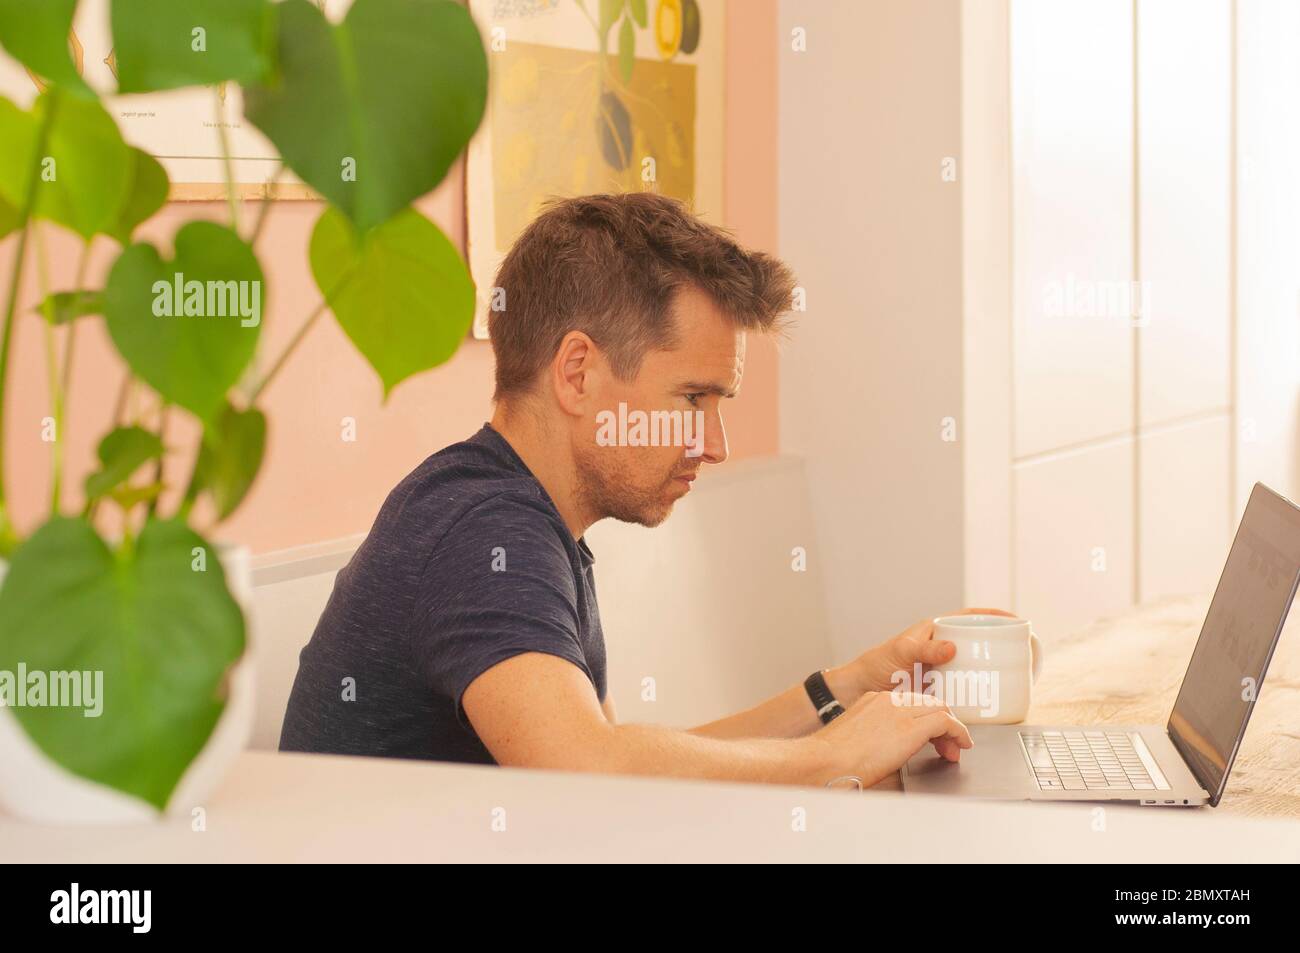 Porträt eines Mannes, der während der Sperrung des Coronavirus von zu Hause aus auf einem Laptop arbeitet. Querformat. Stockfoto